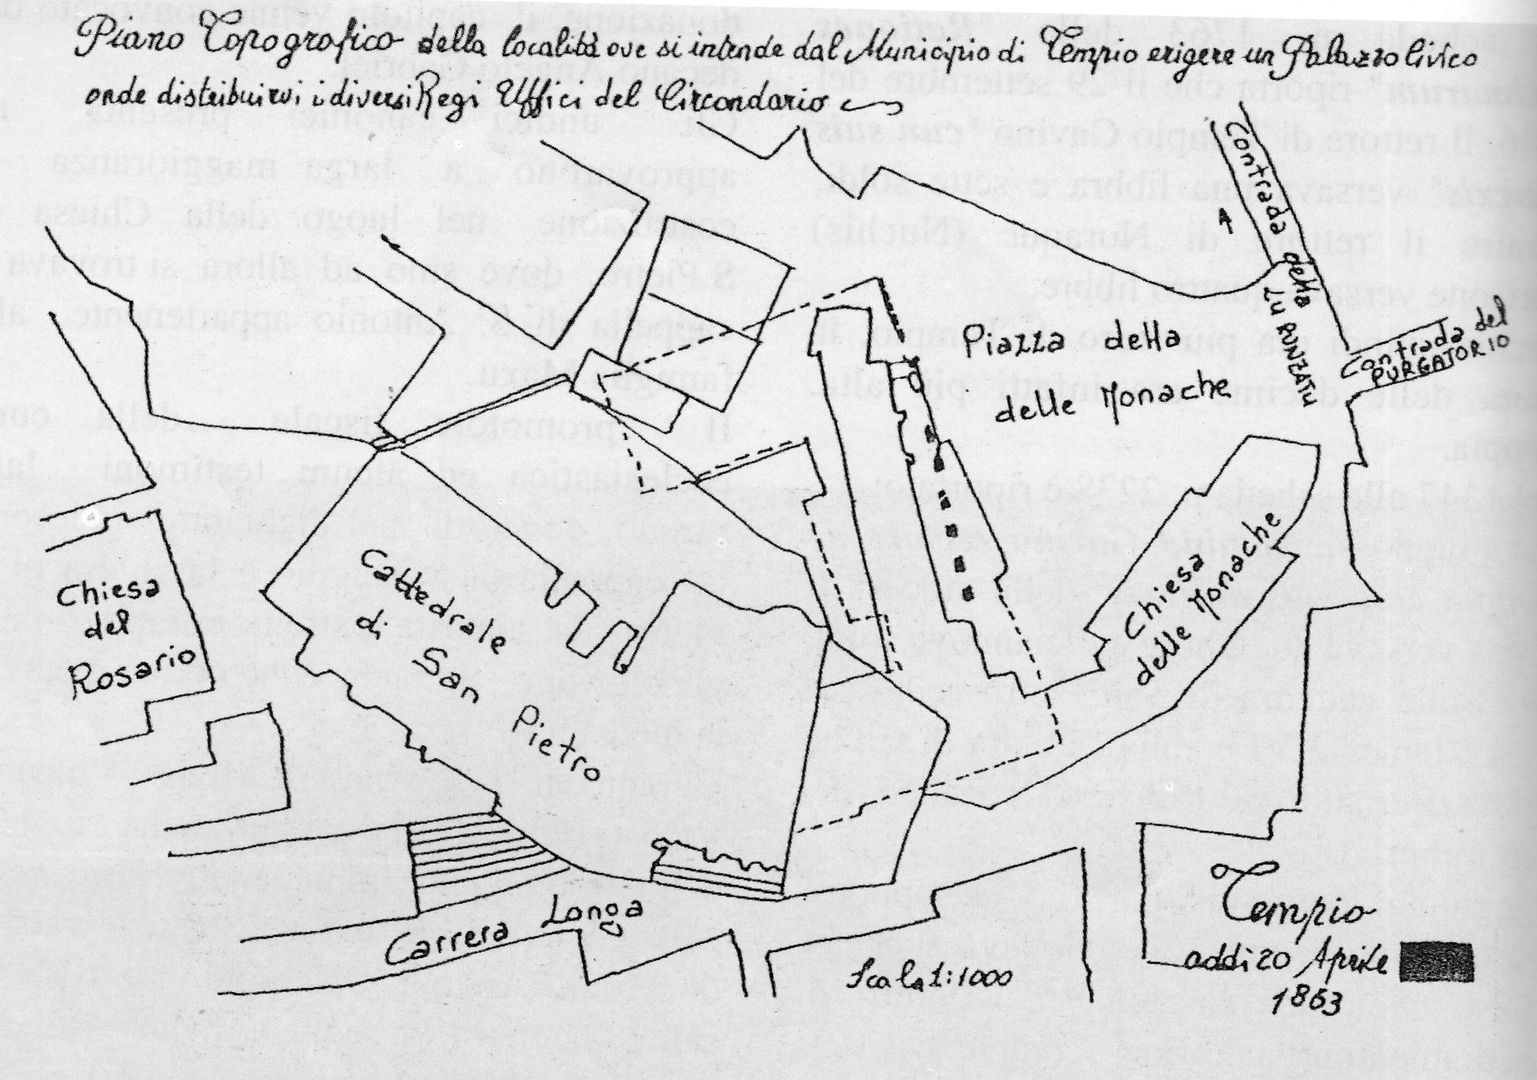 Historical archive of the municipality of Tempio, map of piazza delle monache, 1863